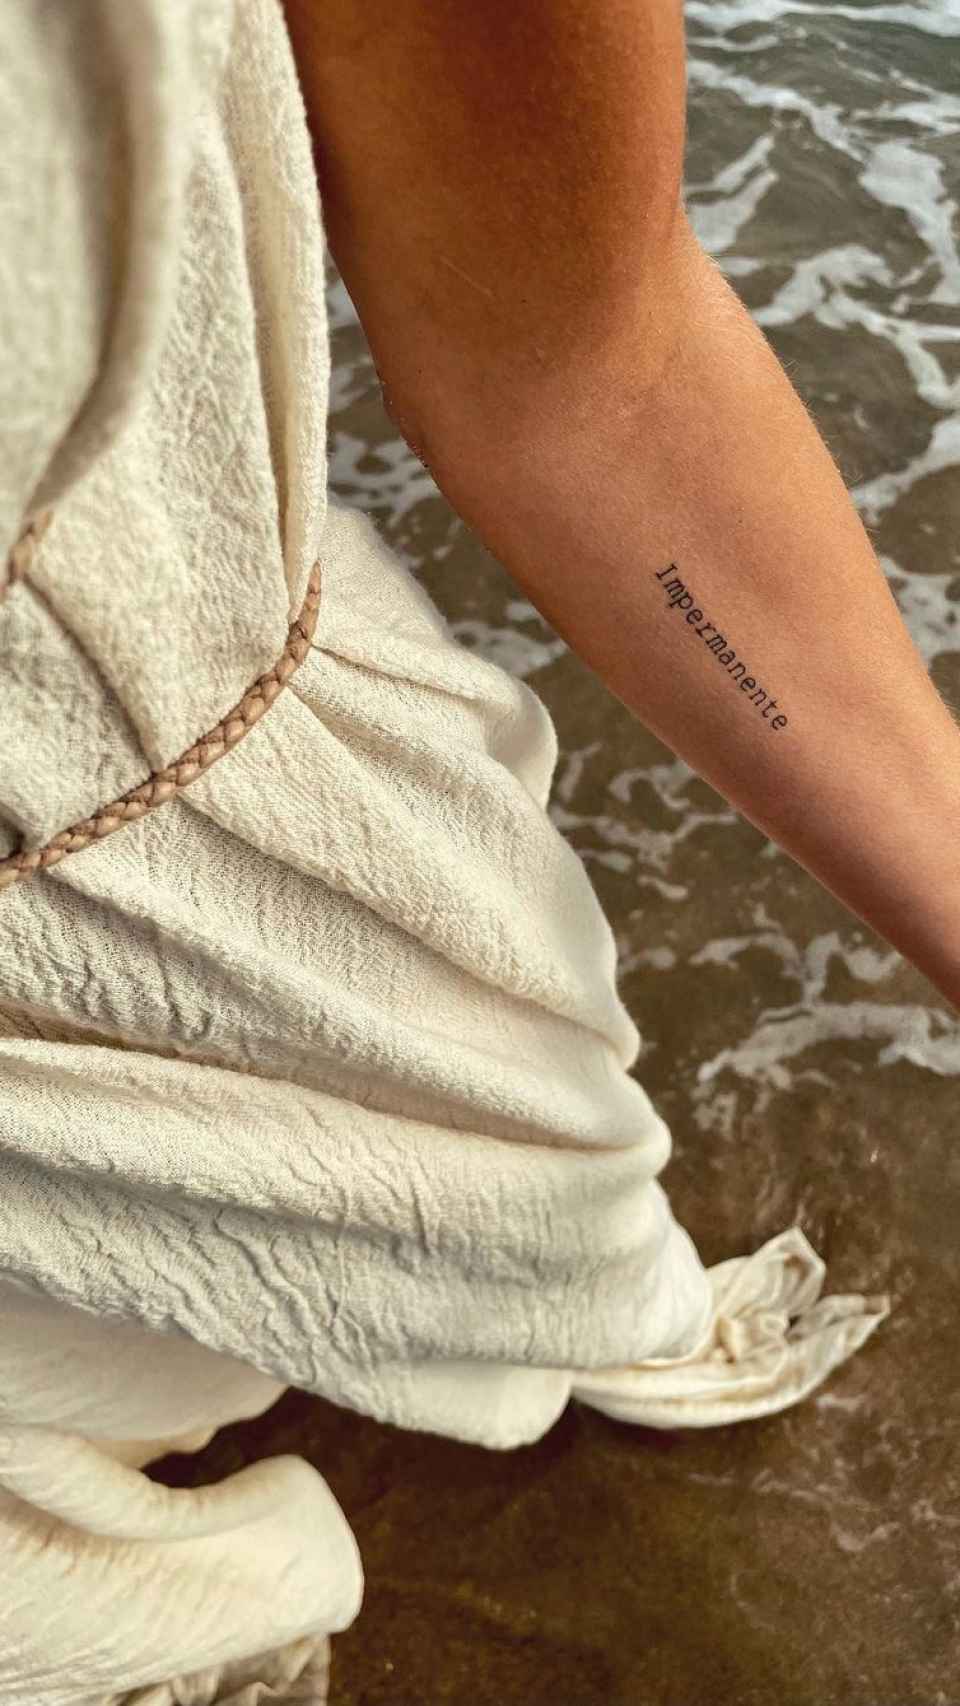 La imagen compartida por Sara Carbonero en la que muestra su nuevo tatuaje.